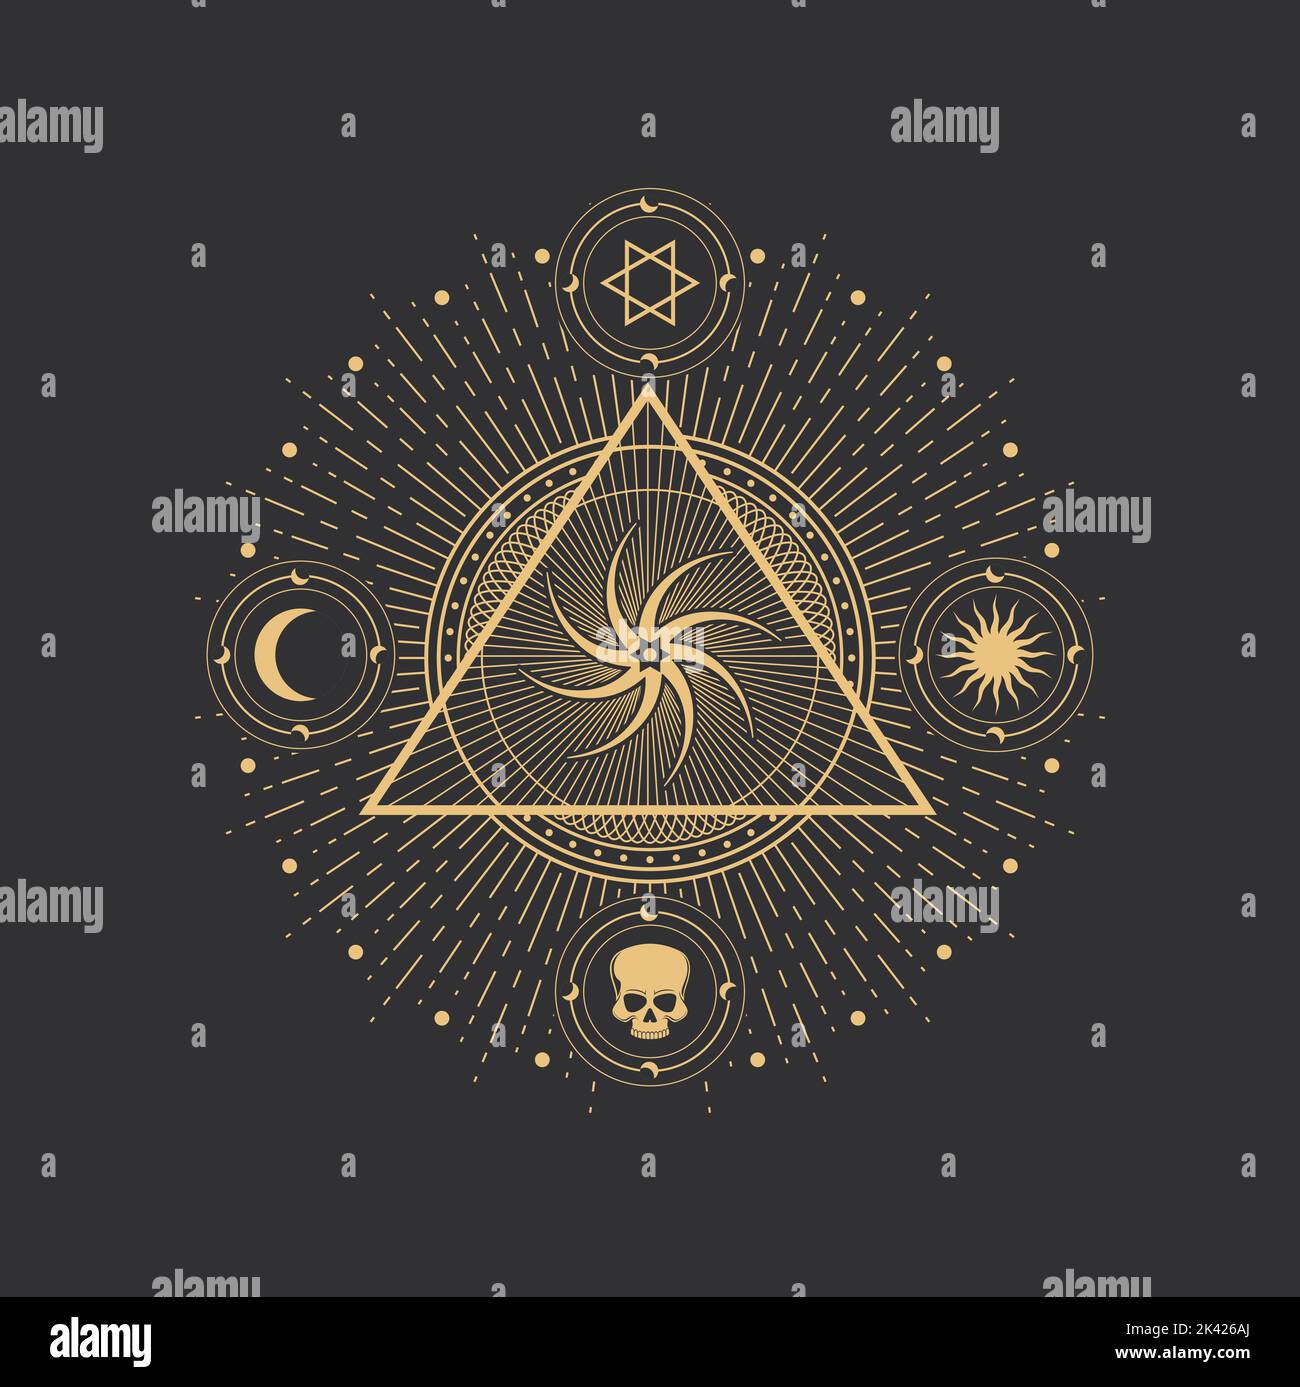 Pentagramm-Symbol, magischer okkulter und esoterischer Stern und Kreis in Vektorpyramide. Alchemie und Tarot-Symbol von Mond, Sonne und Schädel-Ikonen in mystischem Goldrad in Dreieck, Astrologie und verängstigte Geometrie Stock Vektor